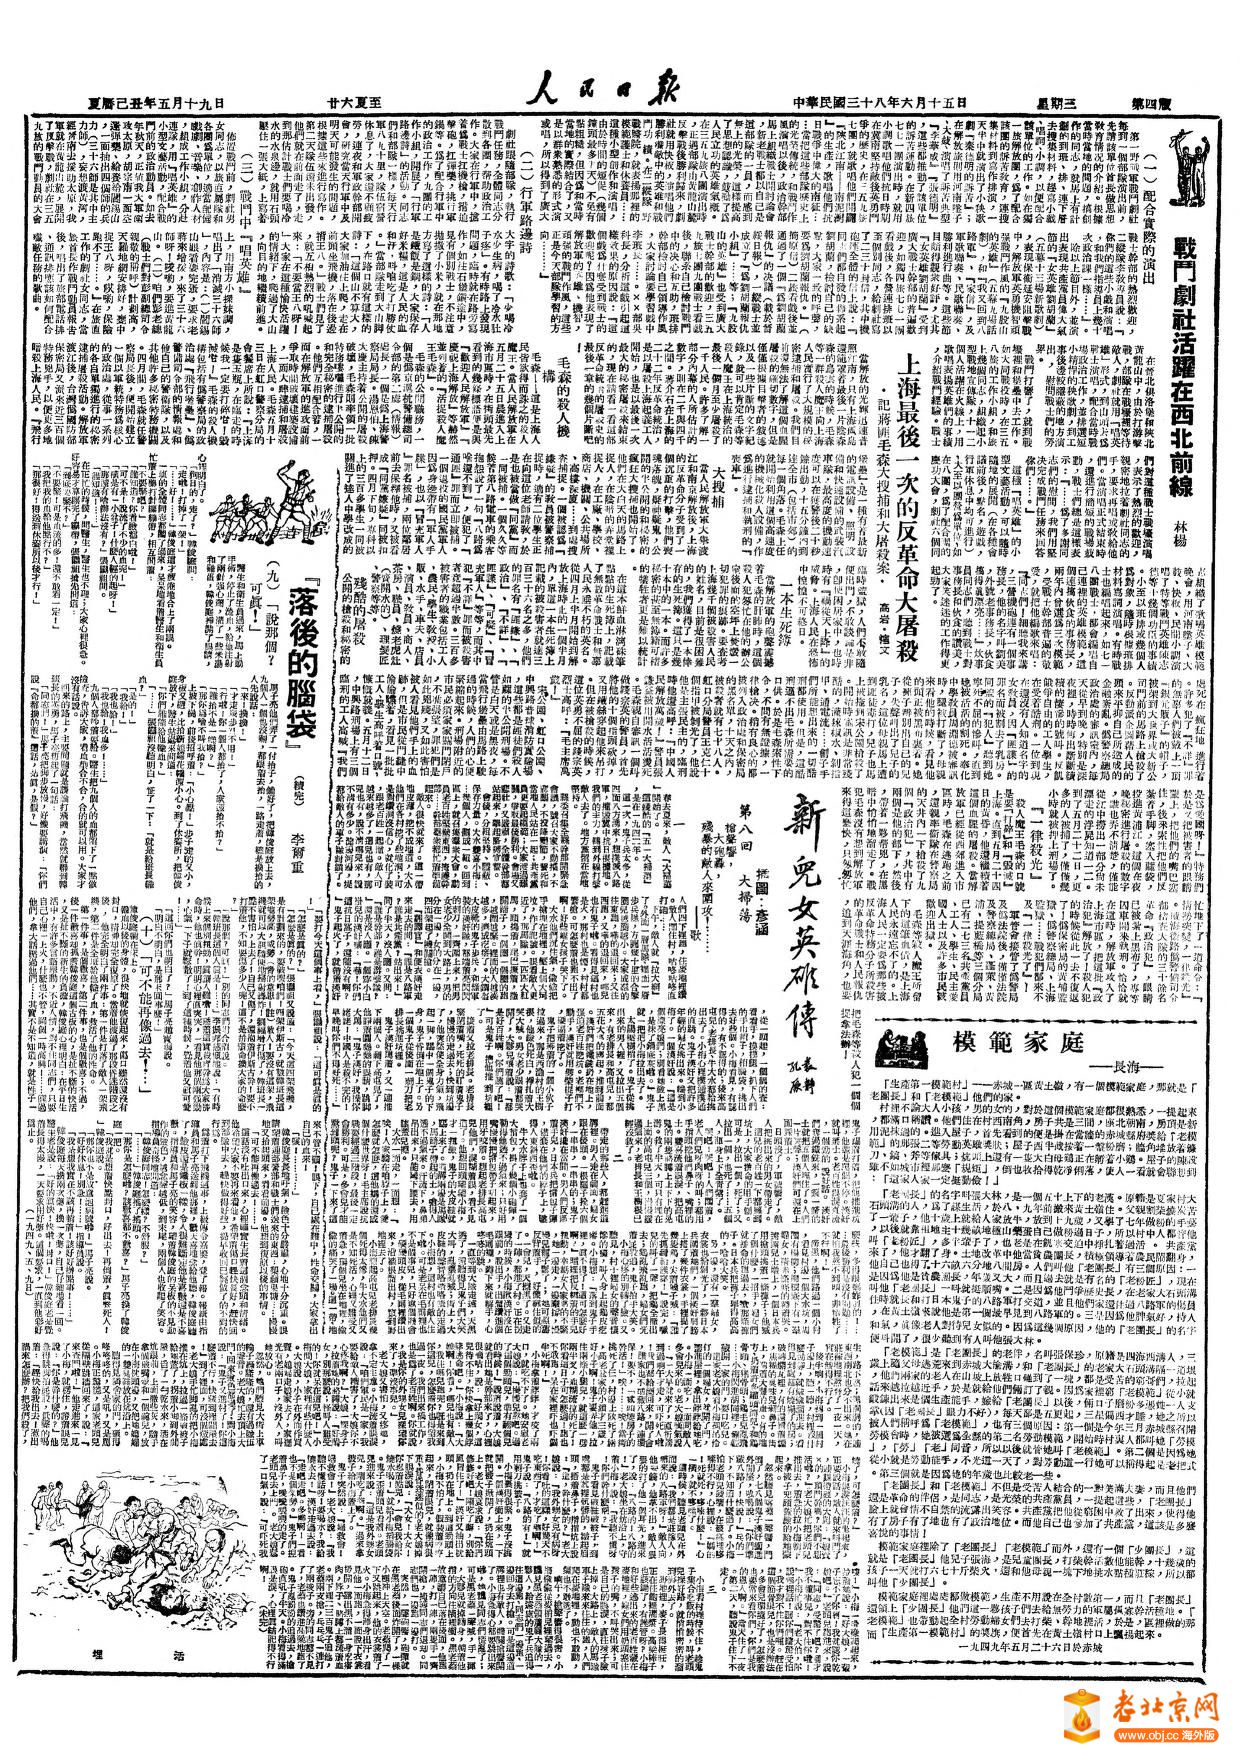 40年代的解放日报&人民日报